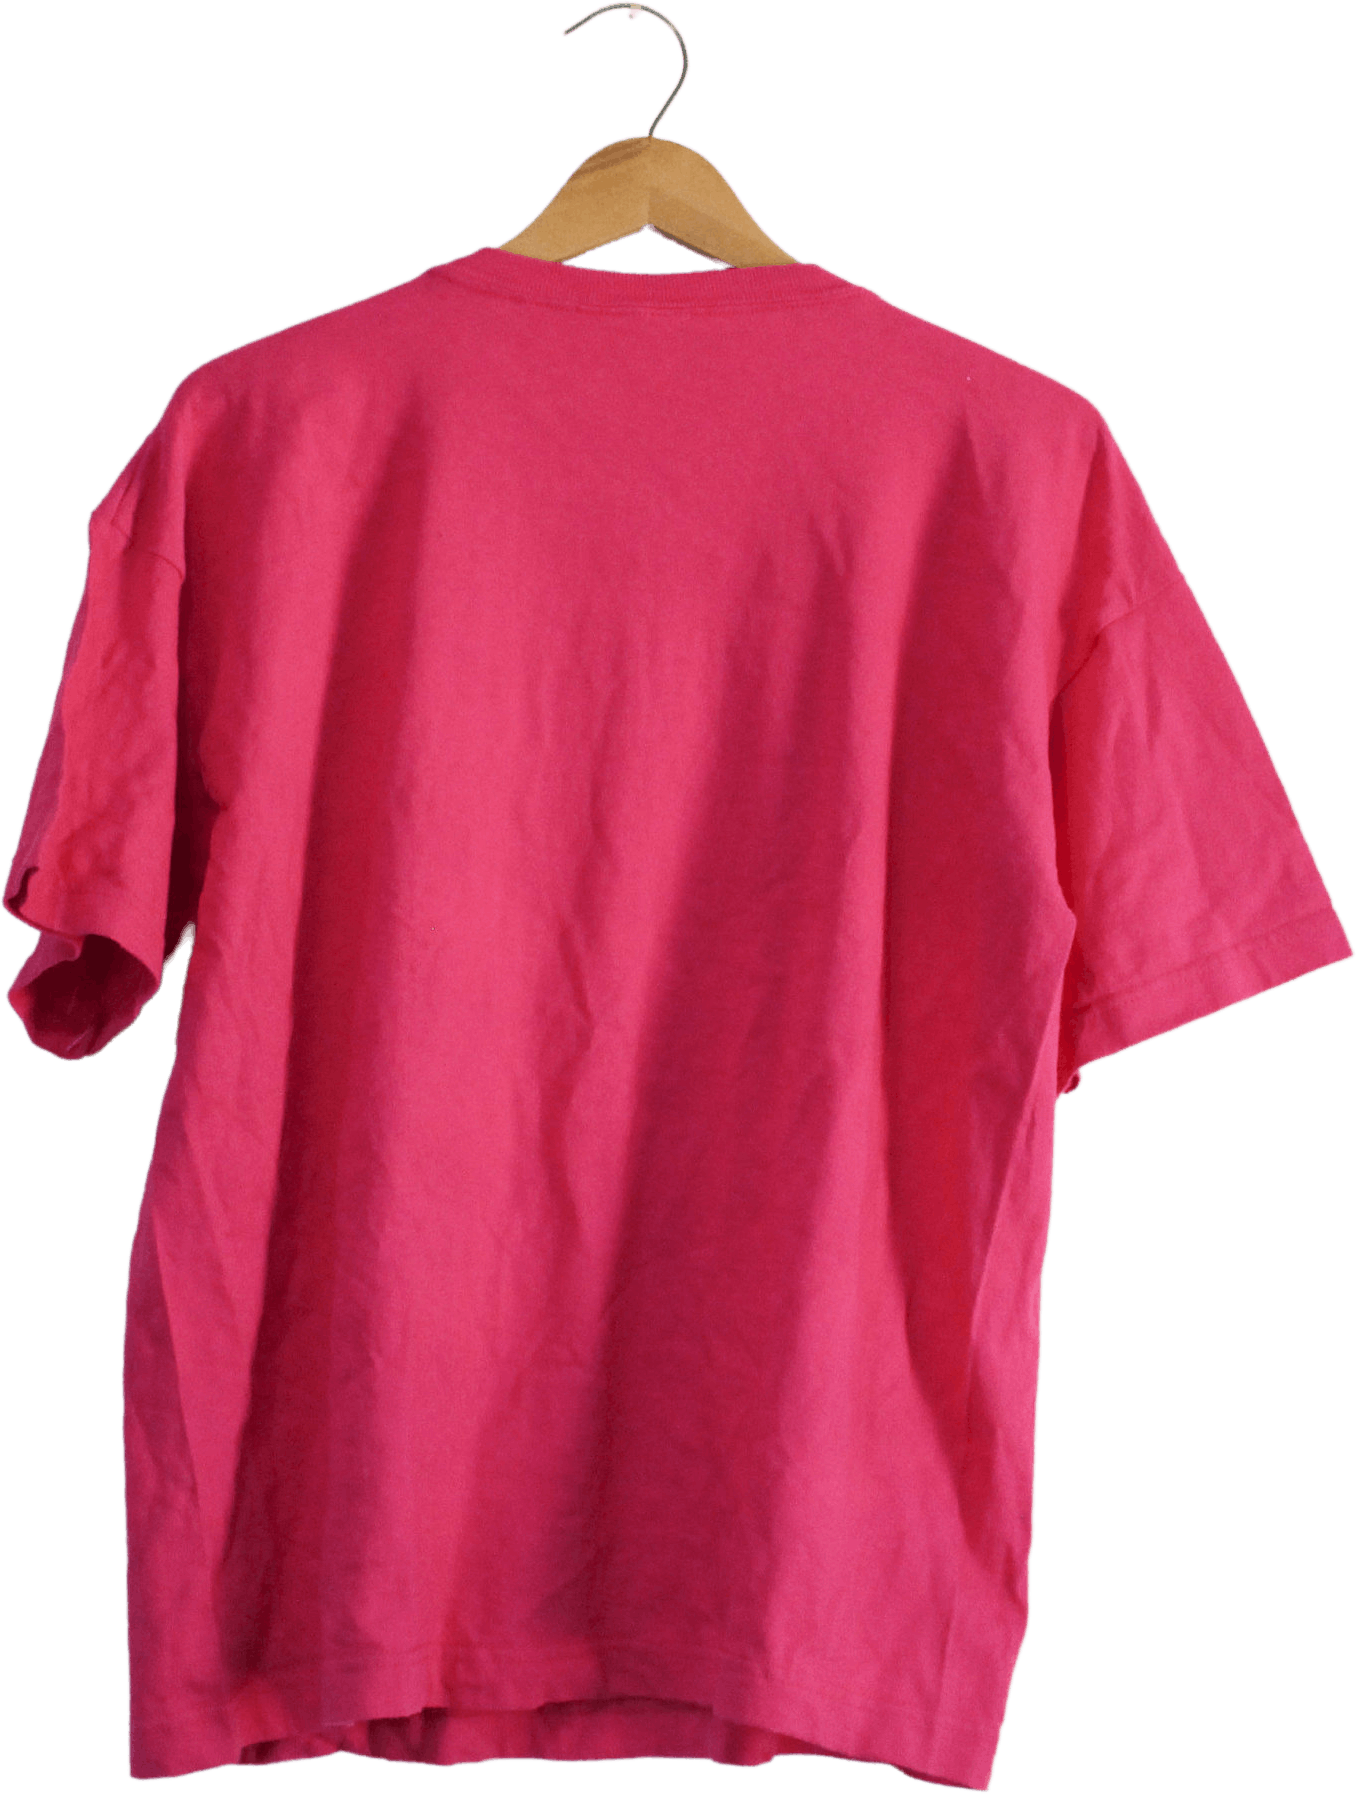 Vintage Hot Pink Branded T-Shirt by Esprit | Shop THRILLING